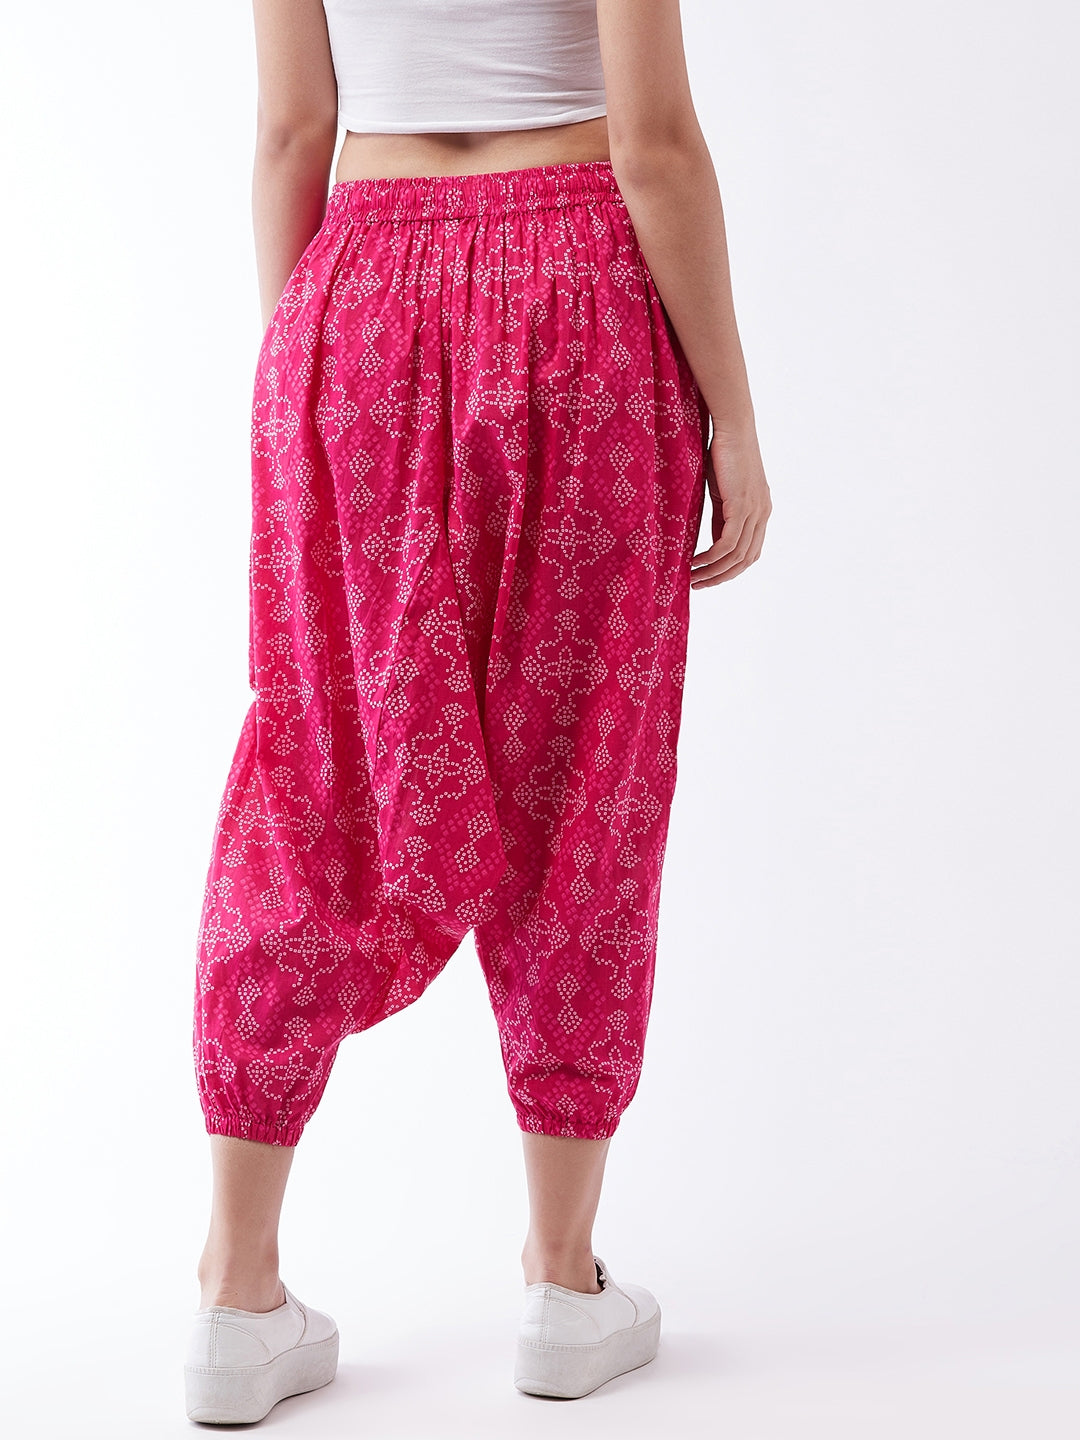 Pink Bandhini Harem Pants For Teens